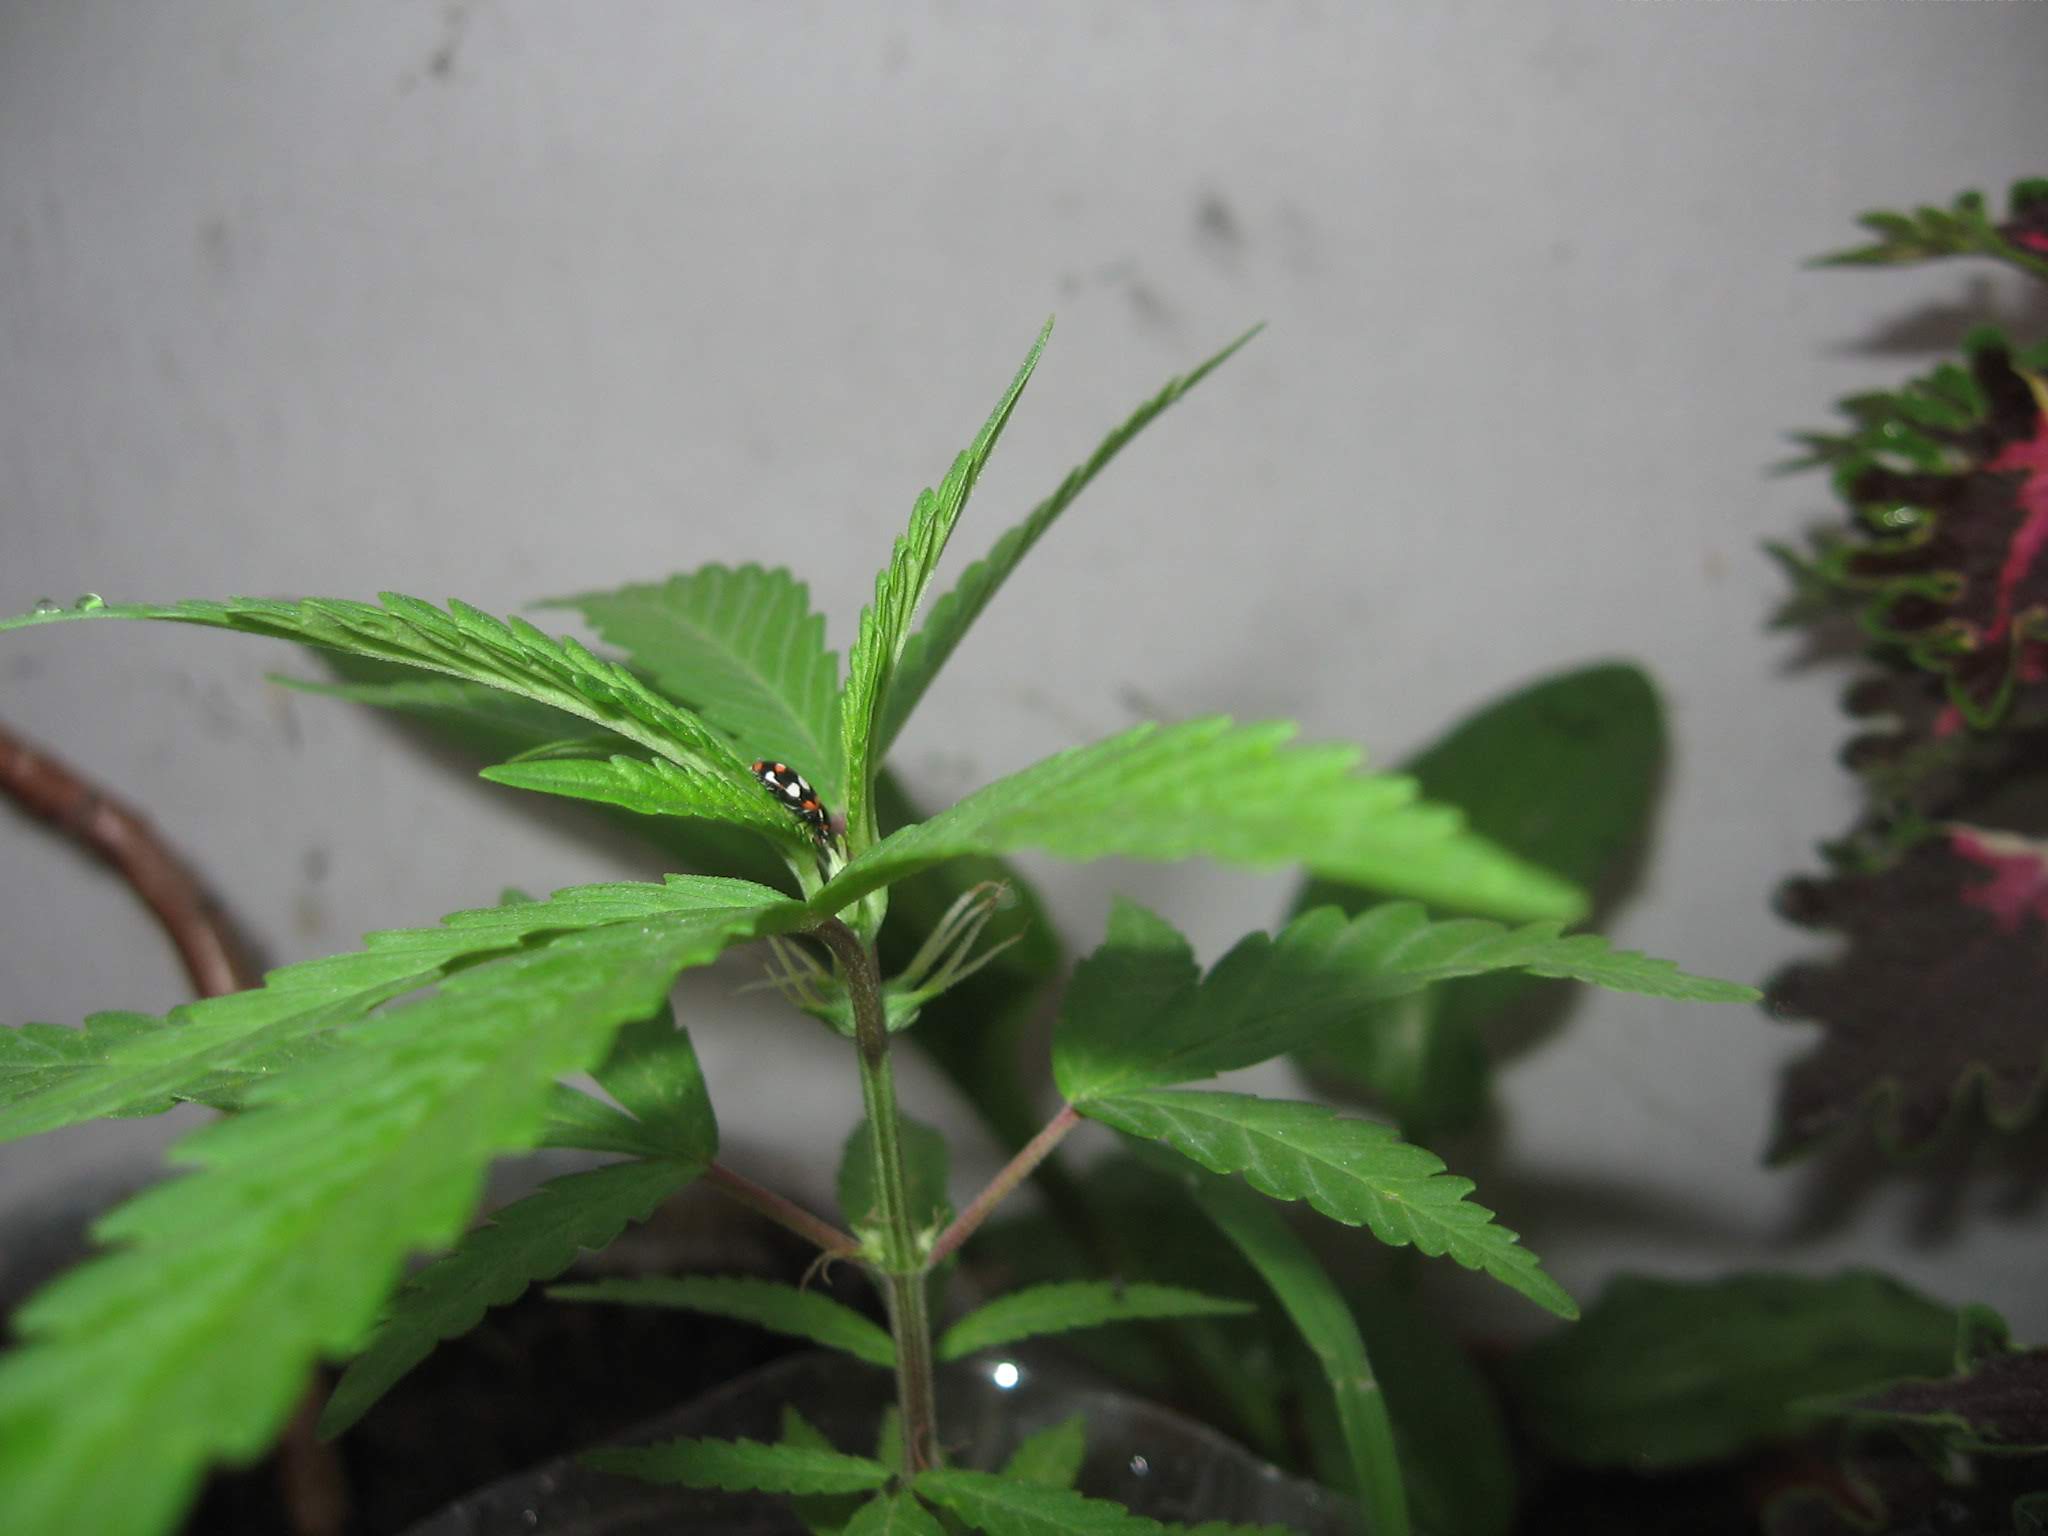 Cannabis in vegetative stage - week 2